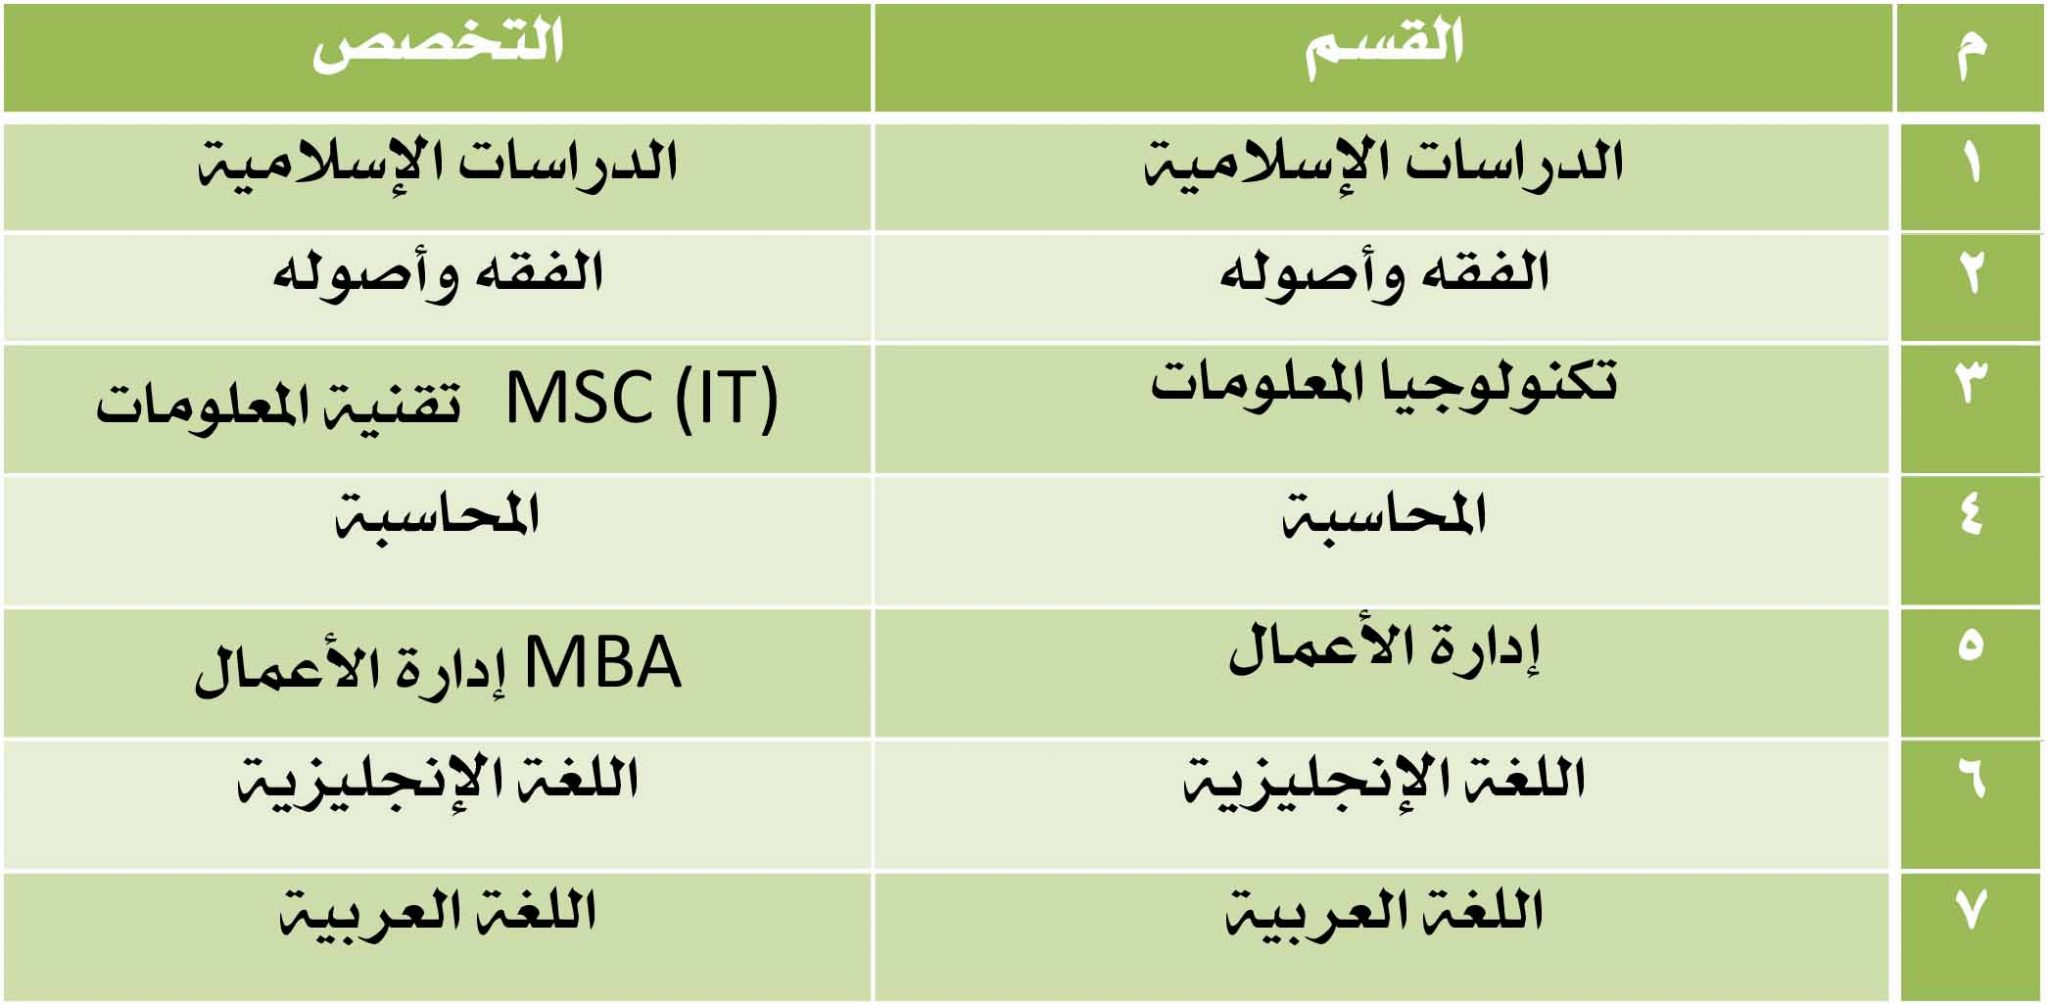 شروط وإجراءات القبول والتسجيل في الماجستير جامعة الريان